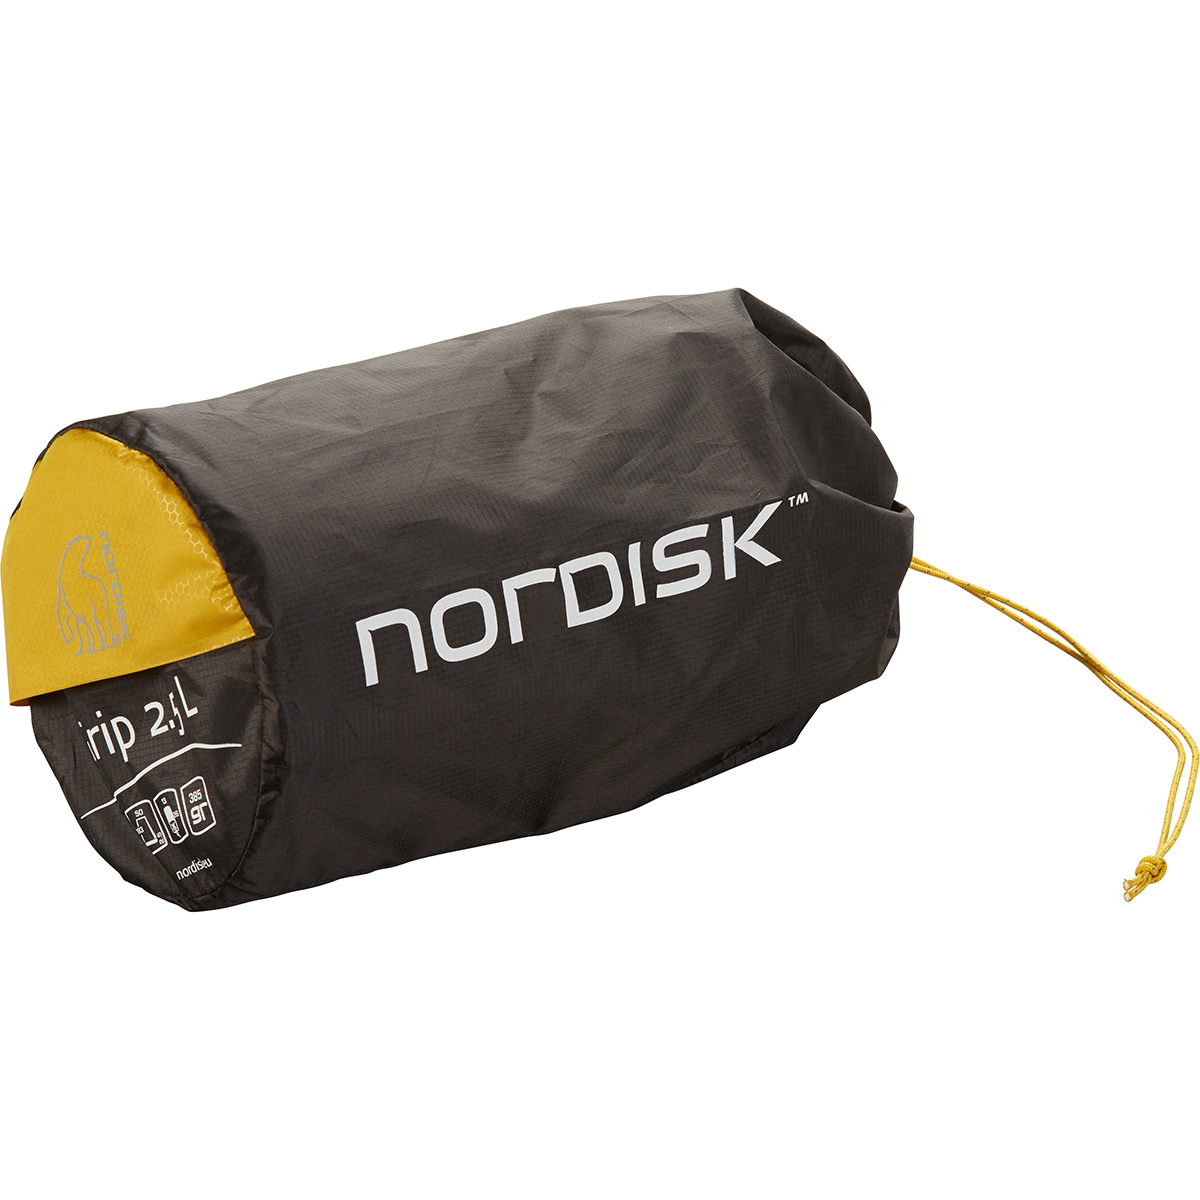 Nordisk Grip 2.5L Isomatte 2